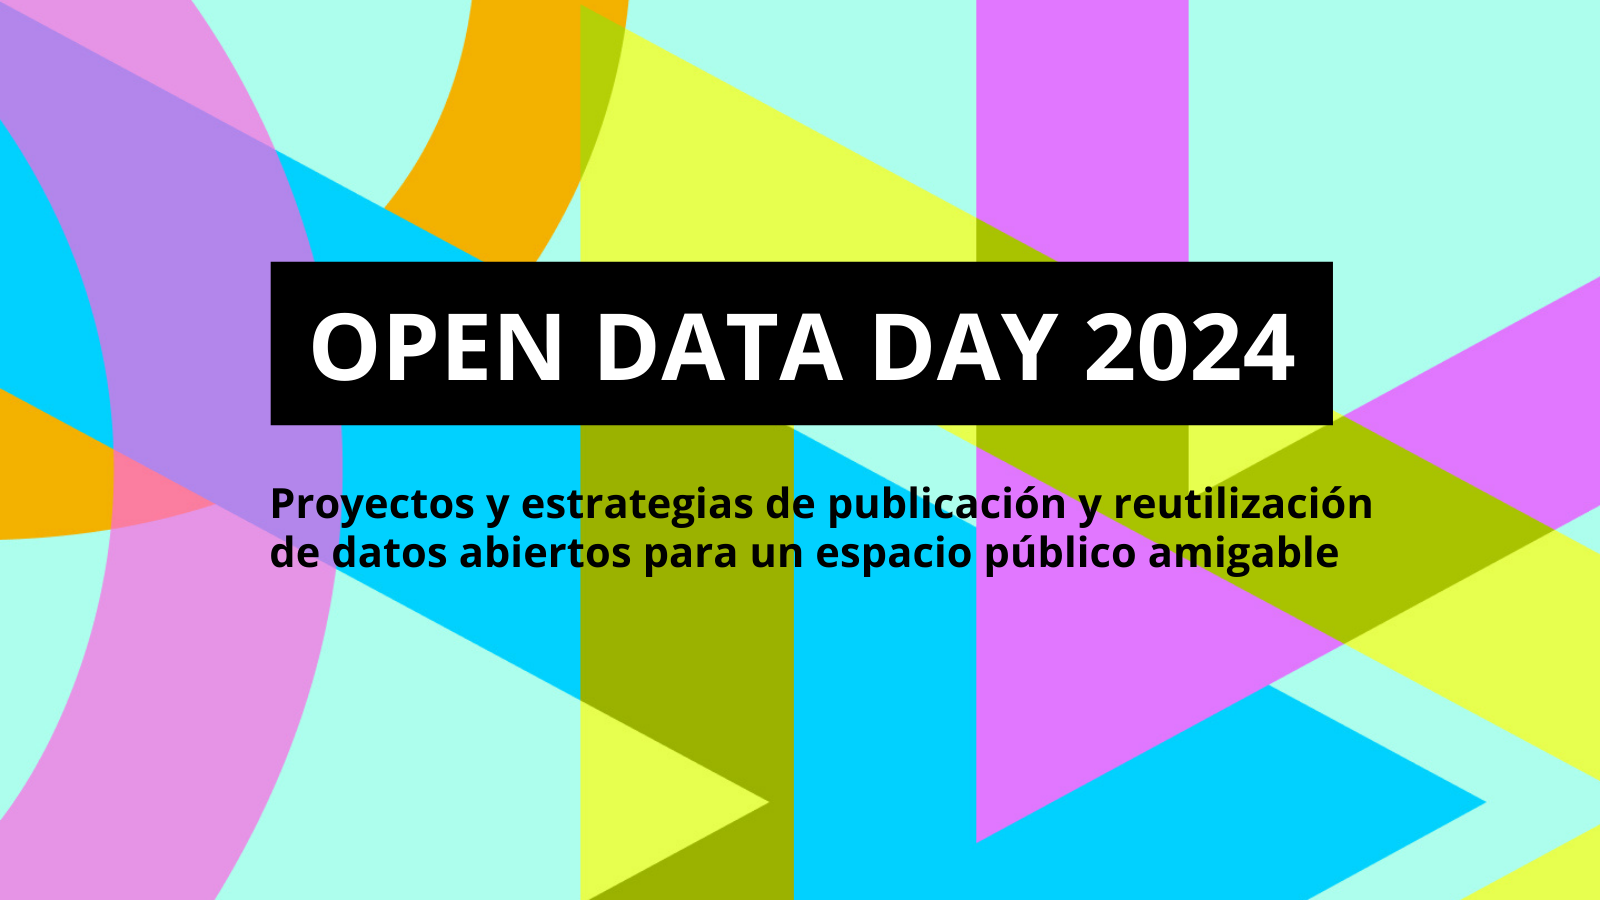 6 de marzo vuelve el Open Data Day 2024!